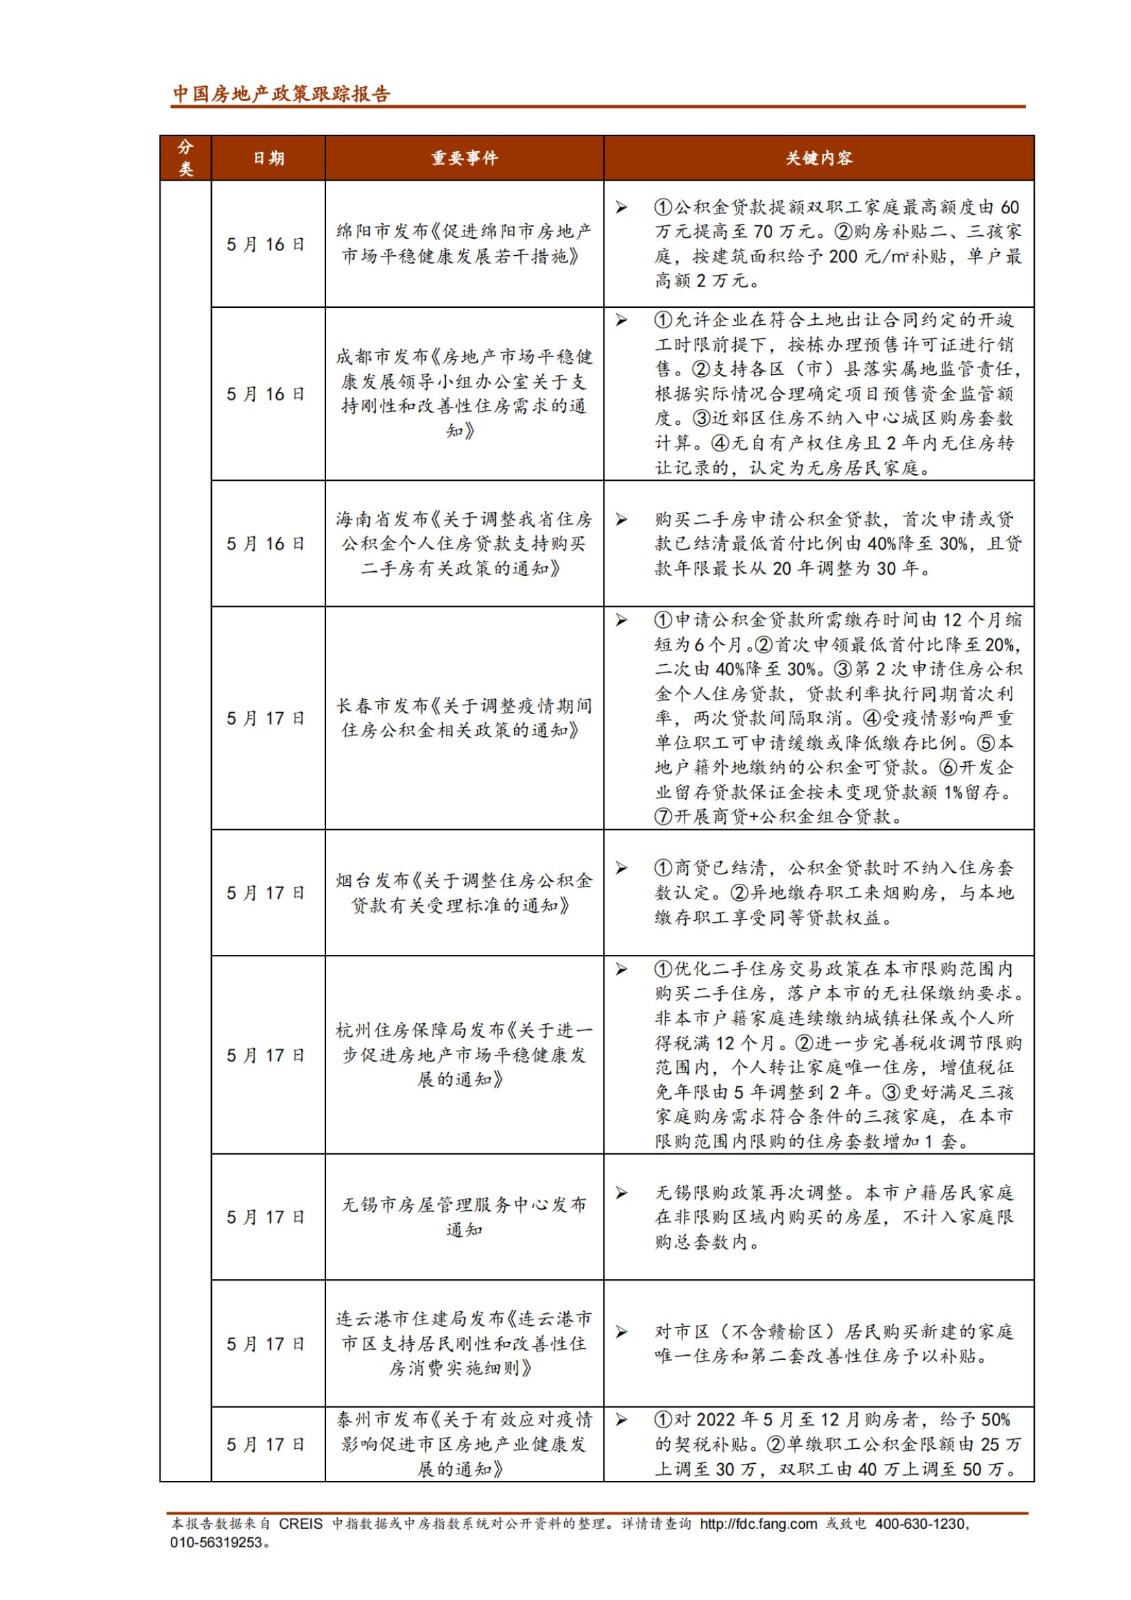 《中指丨中国房地产政策跟踪报告（2022年5月）》_纯图版_11.jpg